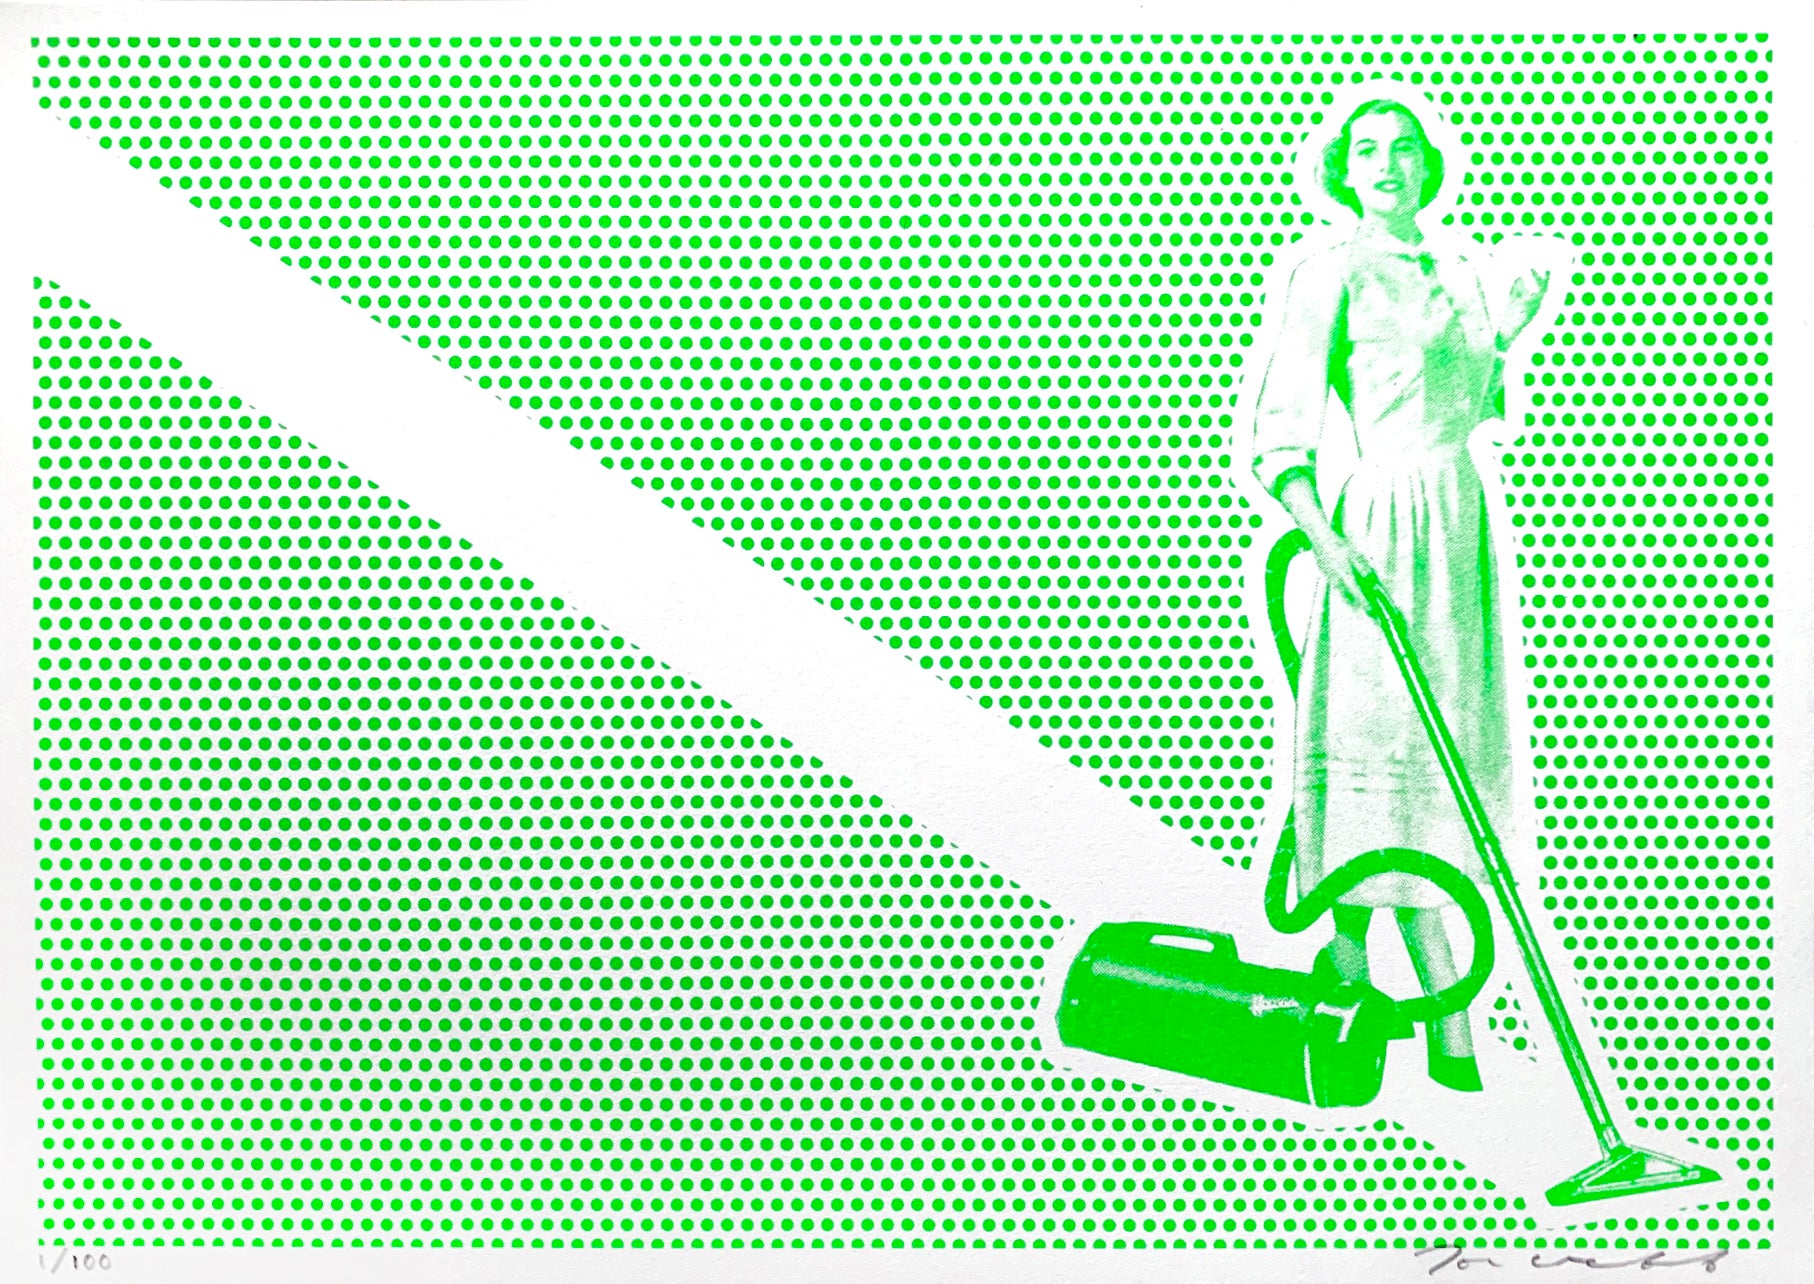 Lichtenstein's Cleaner - Green